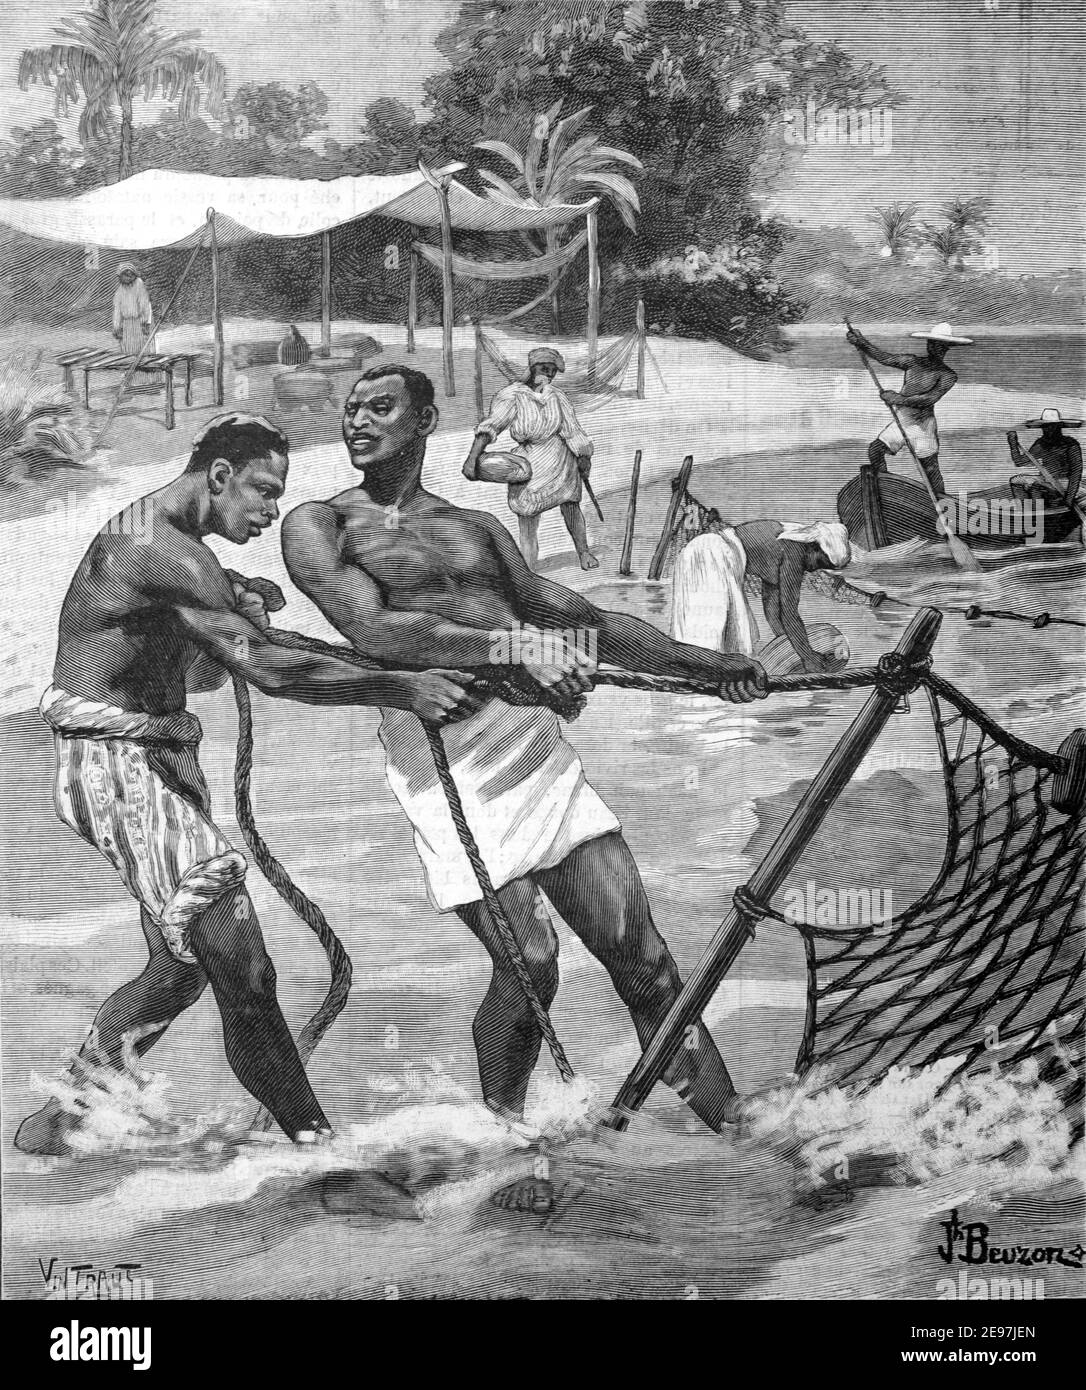 Pescatori costieri o pescatori pesca nella Guyana francese Francia sud Illustrazione o incisione d'epoca America 1900 Foto Stock